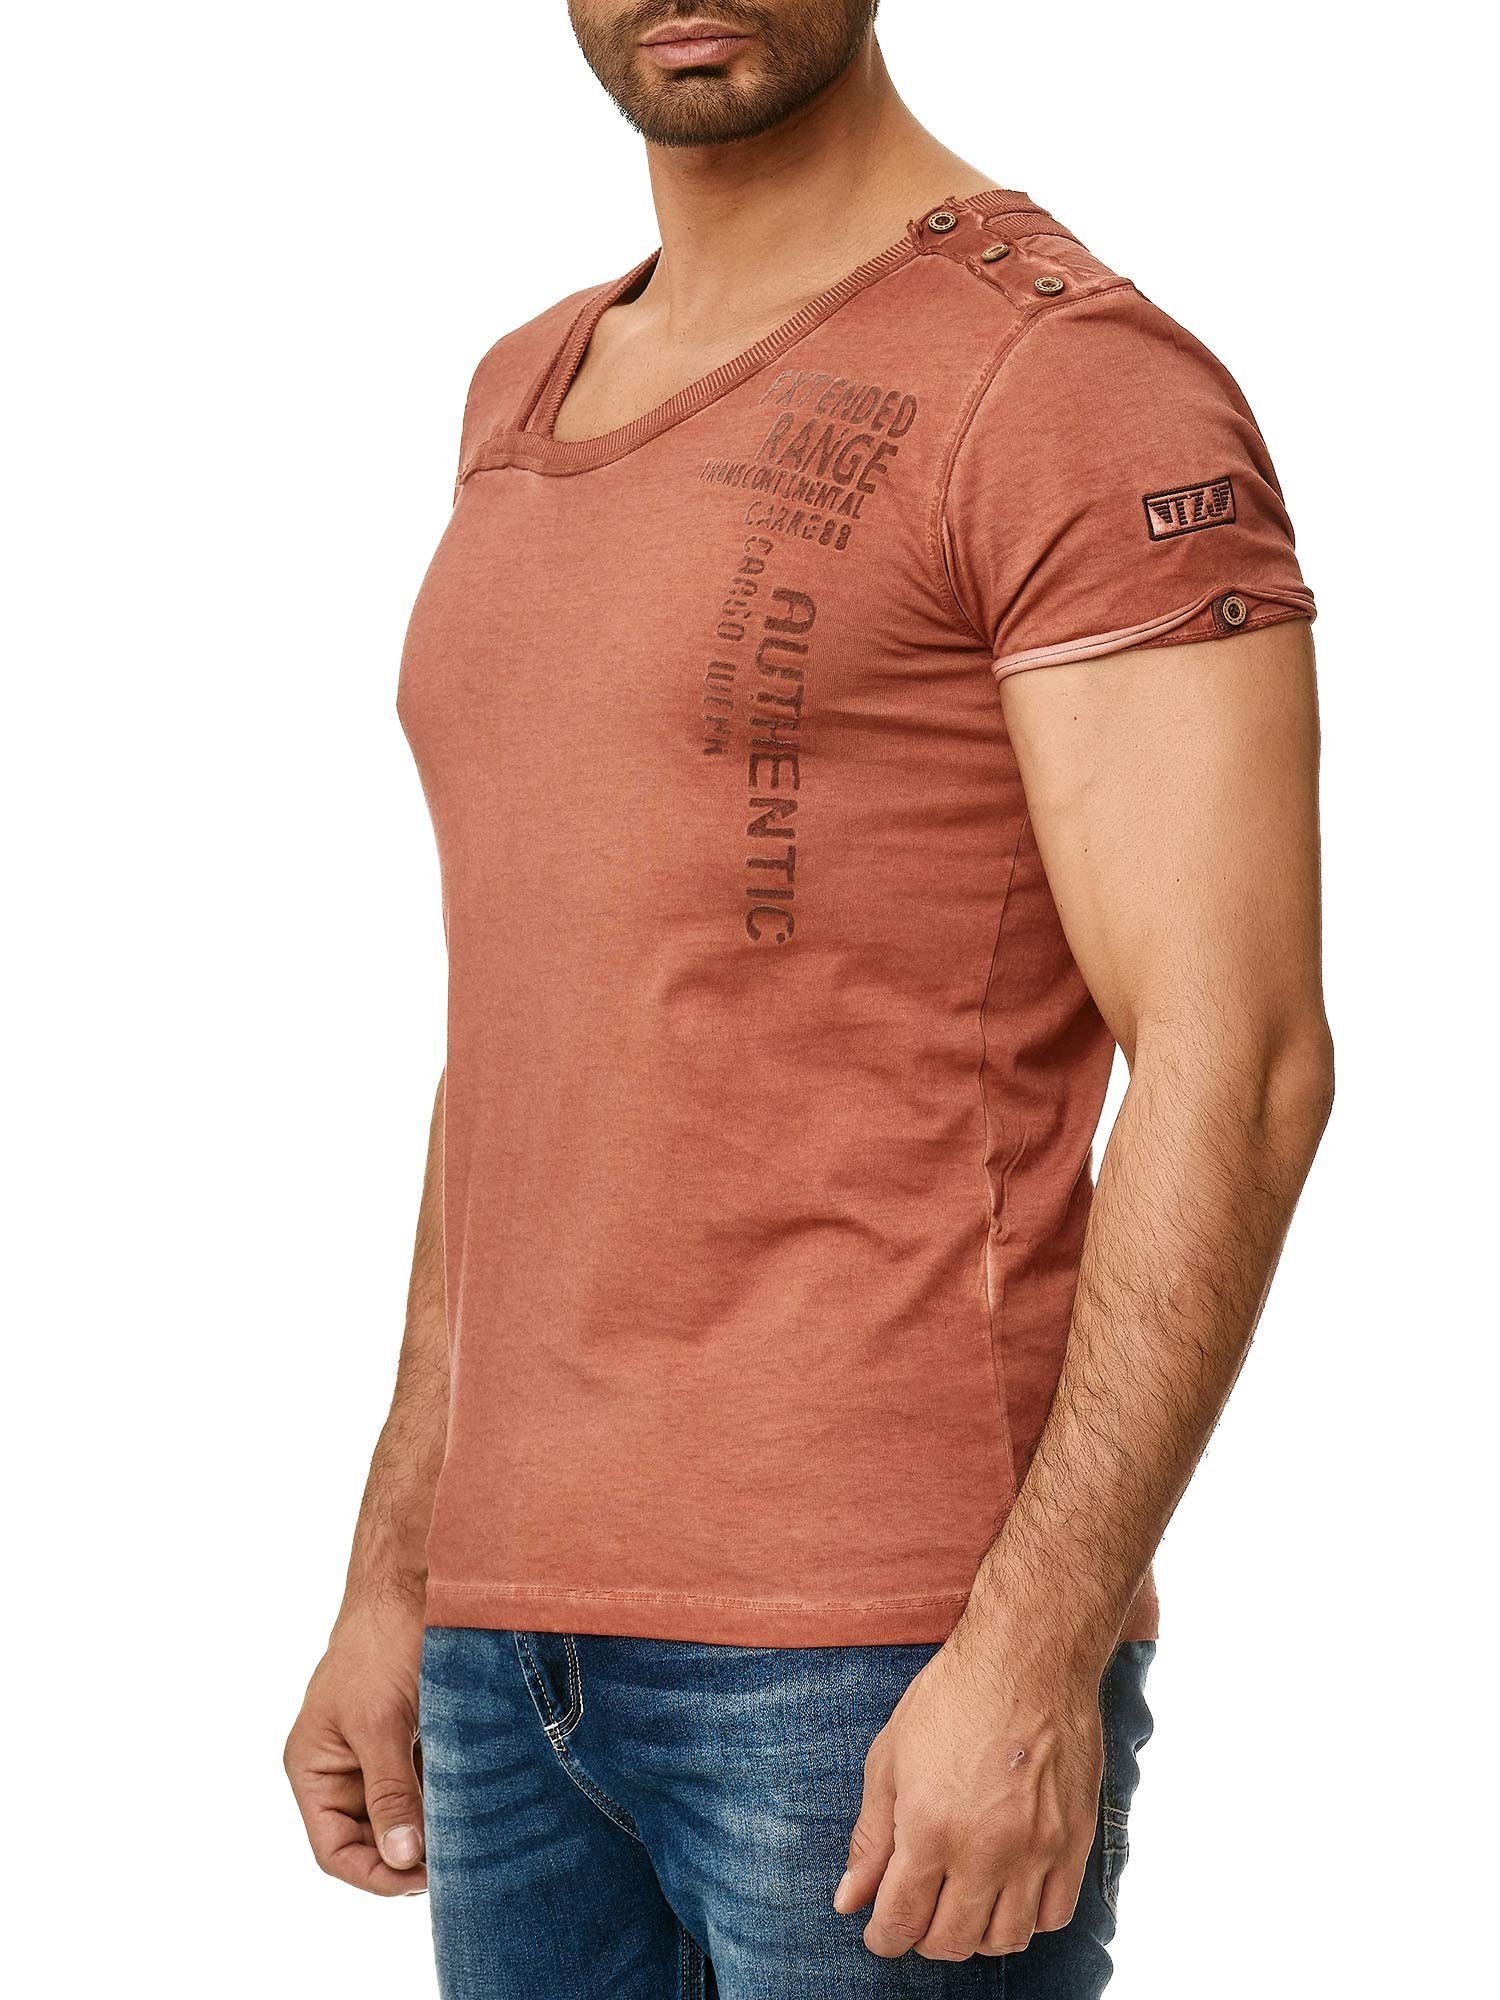 Tazzio T-Shirt Knopfleiste Kragen der und in Ölwaschung an bordeaux stylischem Schulter 4022 trendiger mit